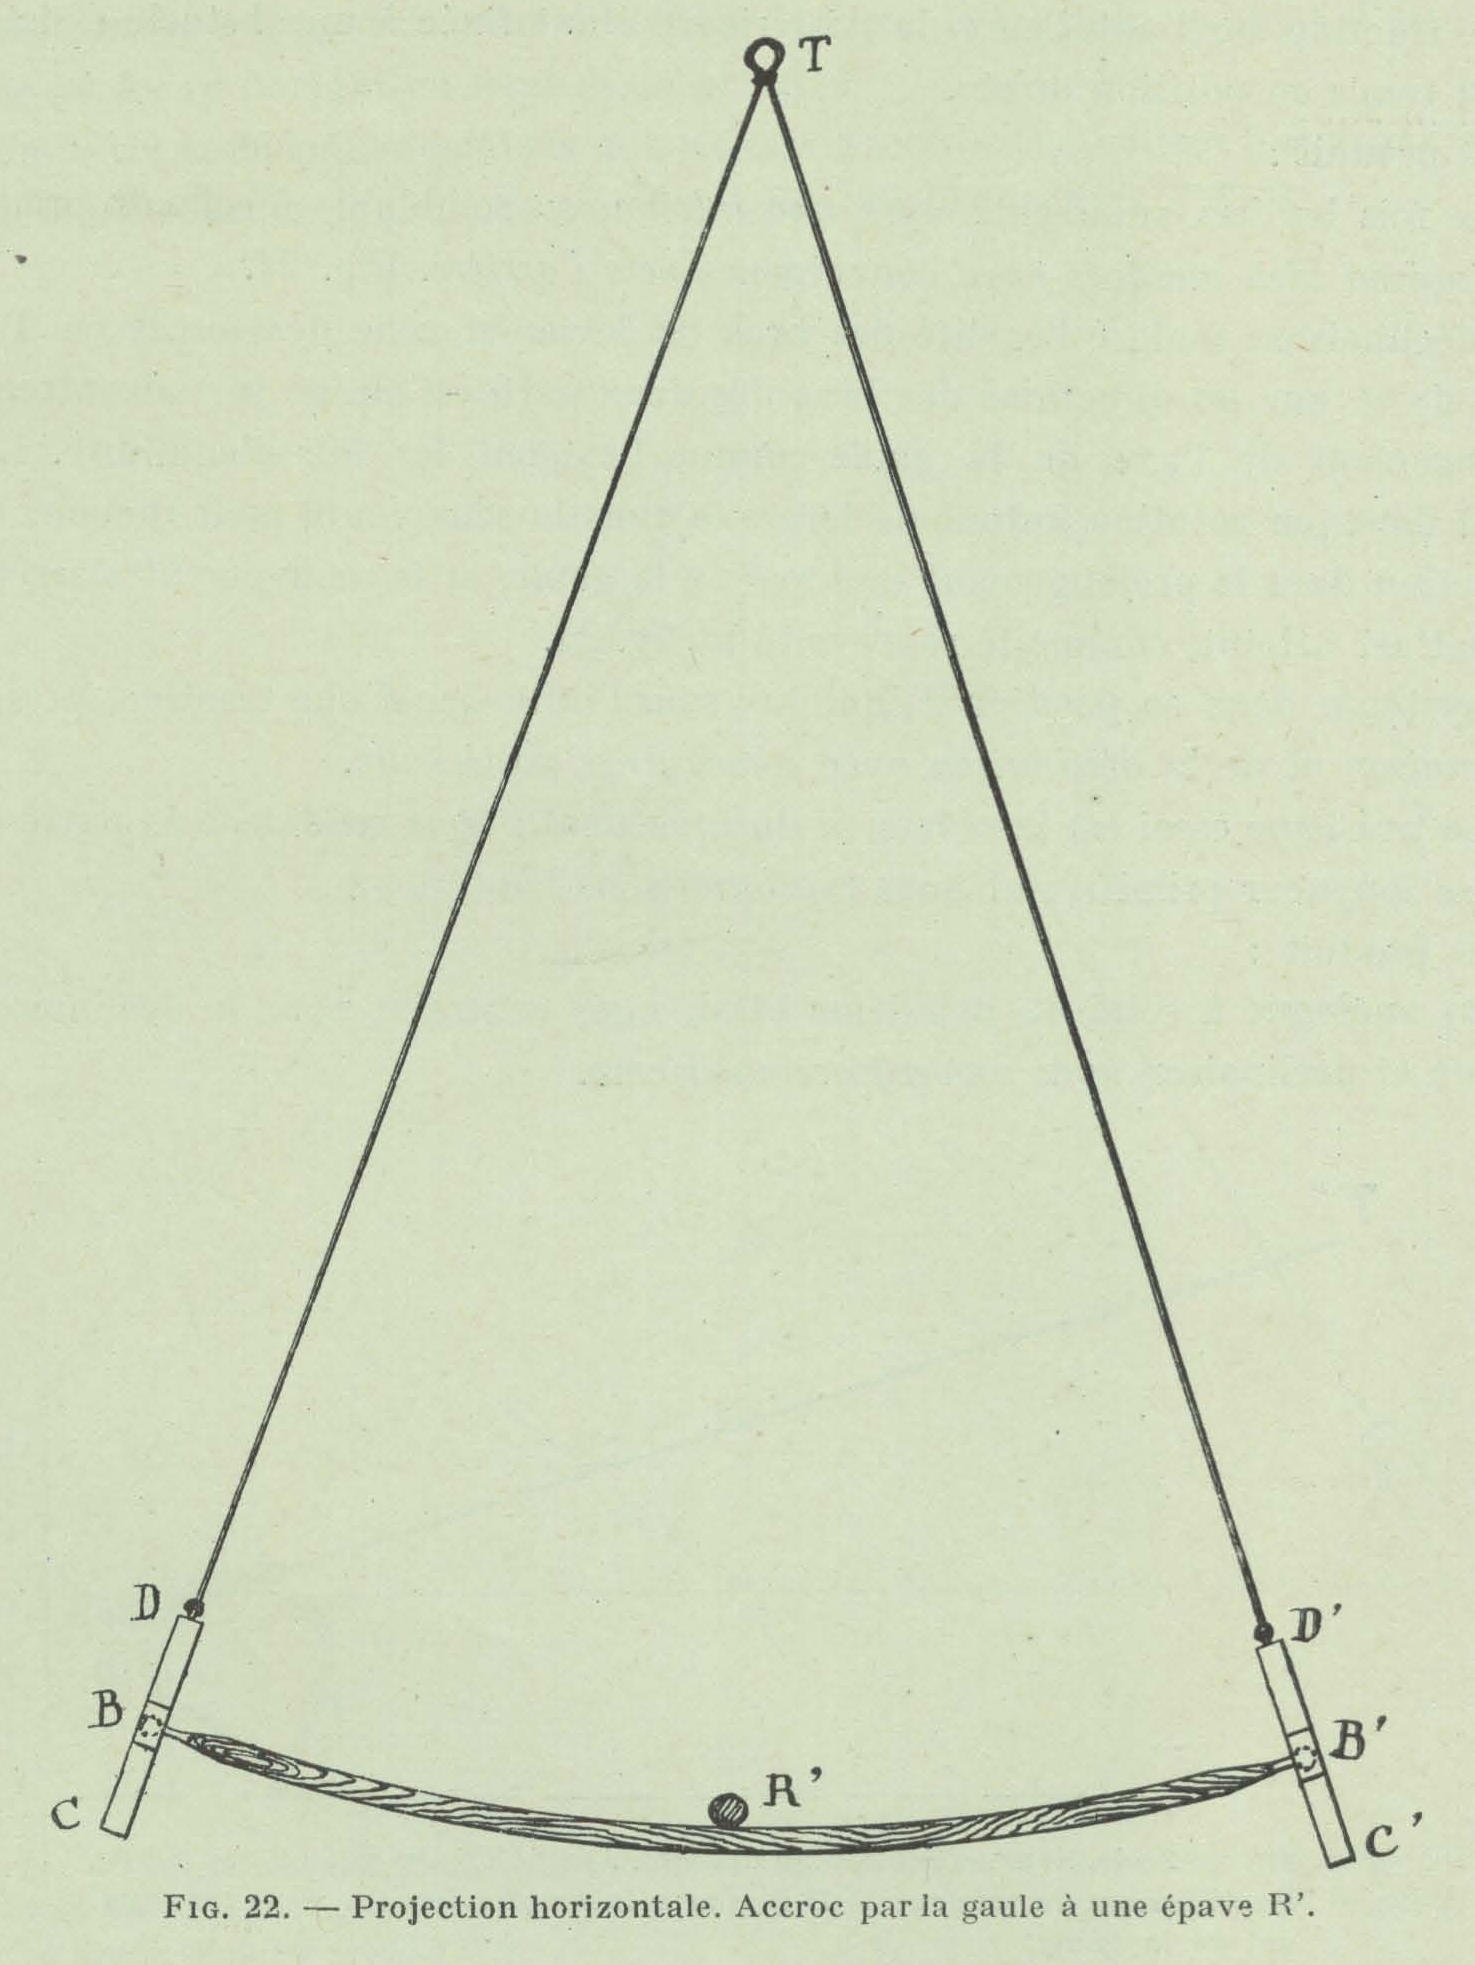 Gilson (1911, fig. 22)